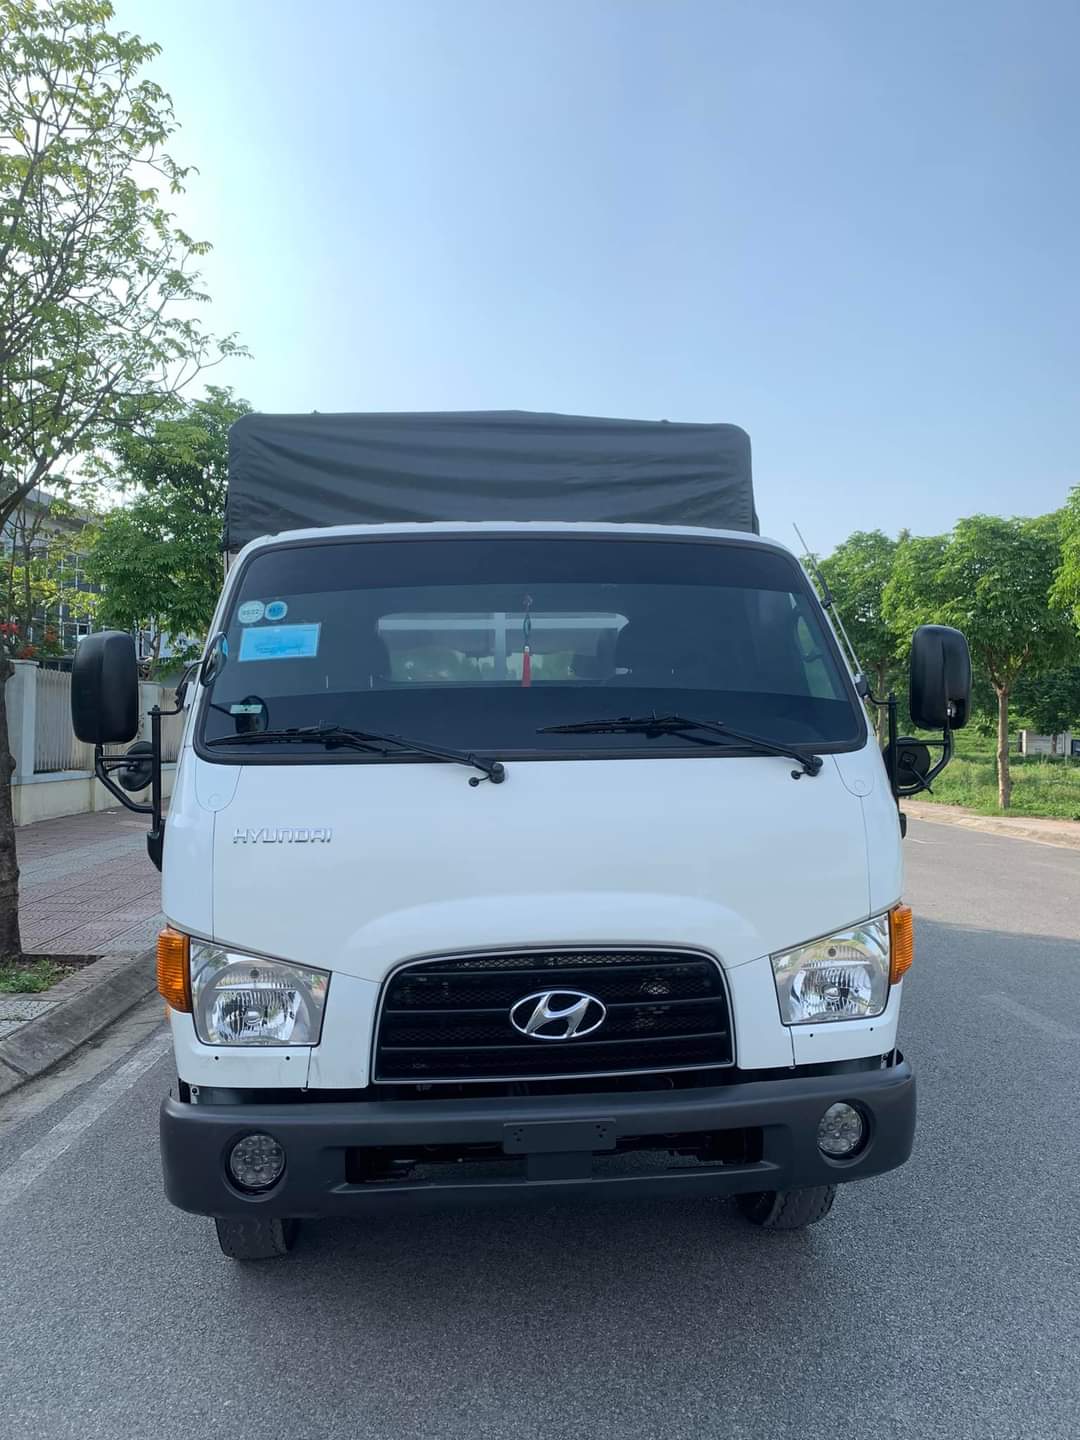 Hyundai tải Hd110sp đời 2018 thùng bạt